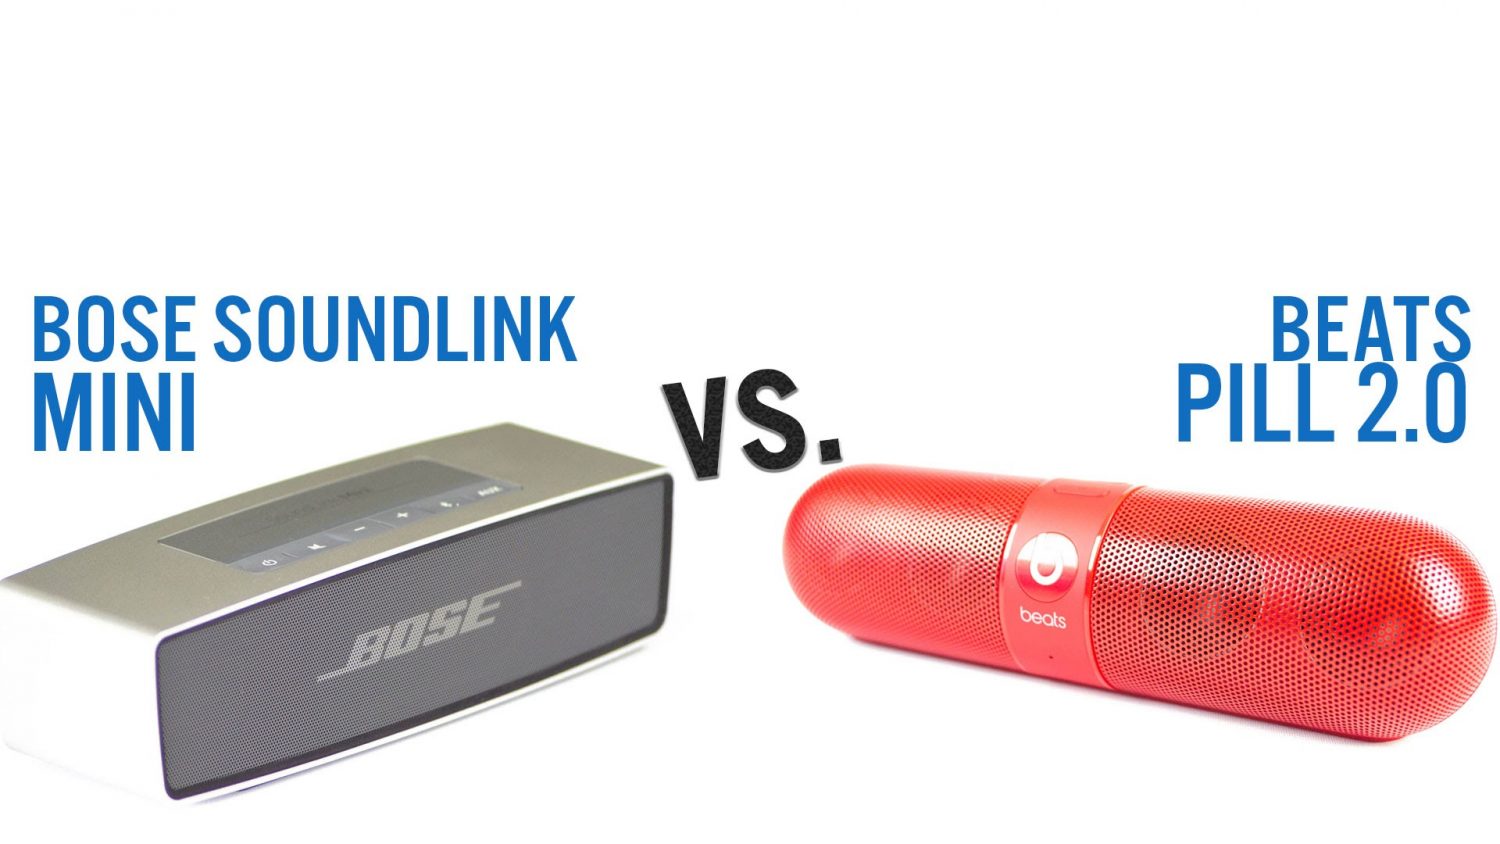 Bose SoundLink Mini vs. Beats Pill 